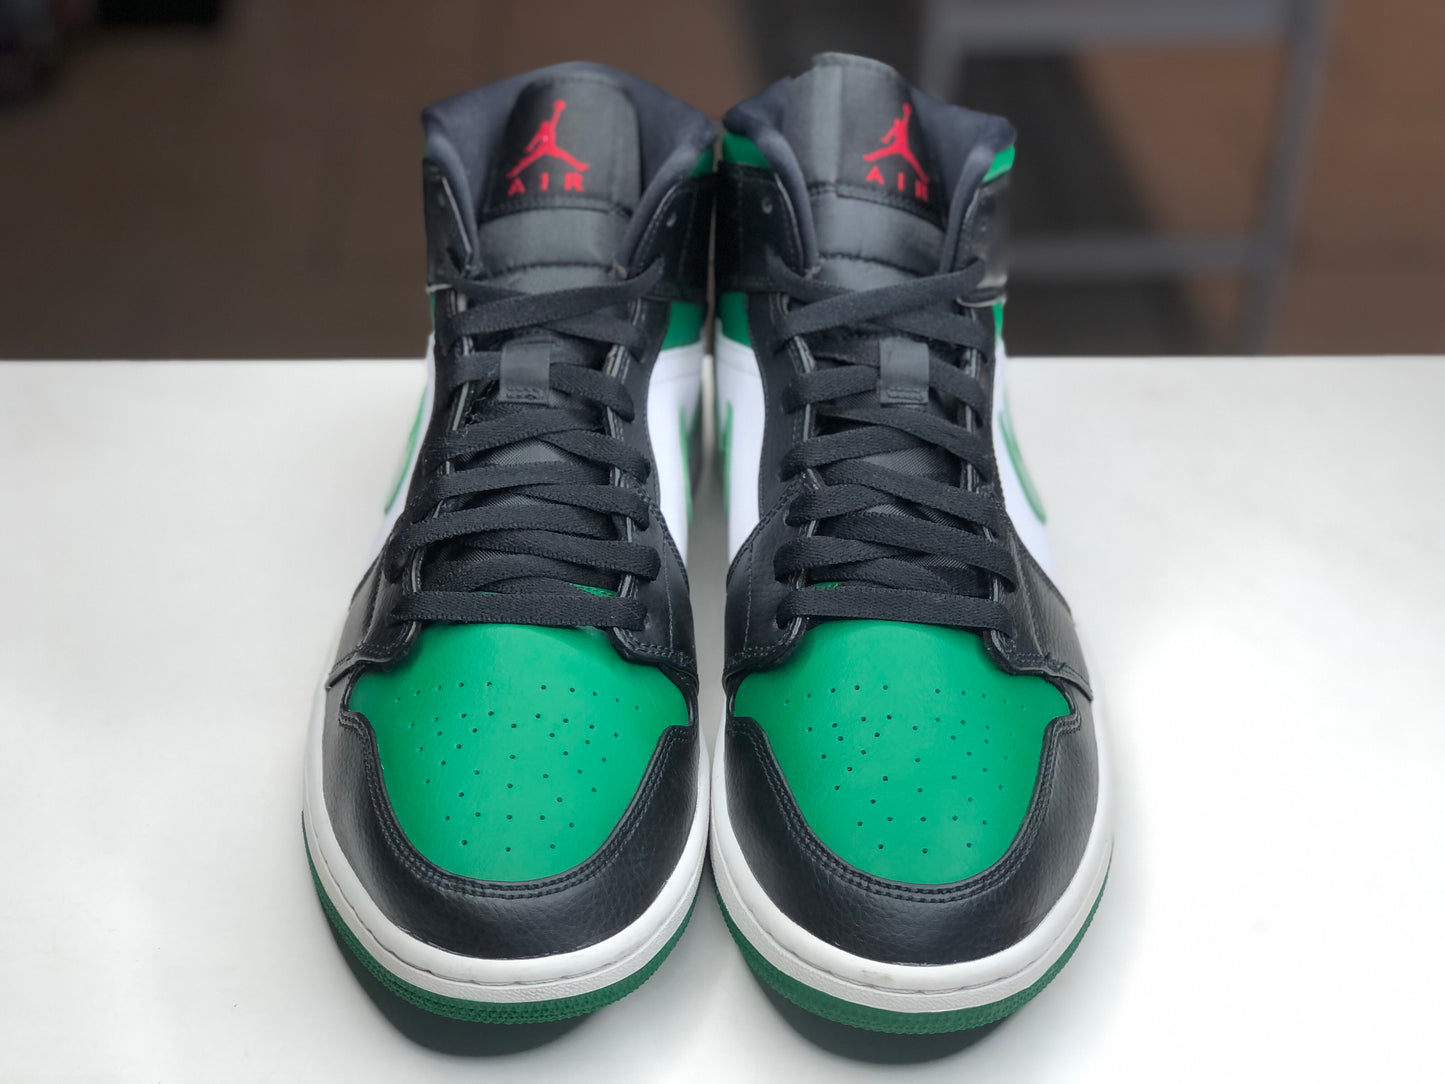 Jordan 1 Green Toe size 13